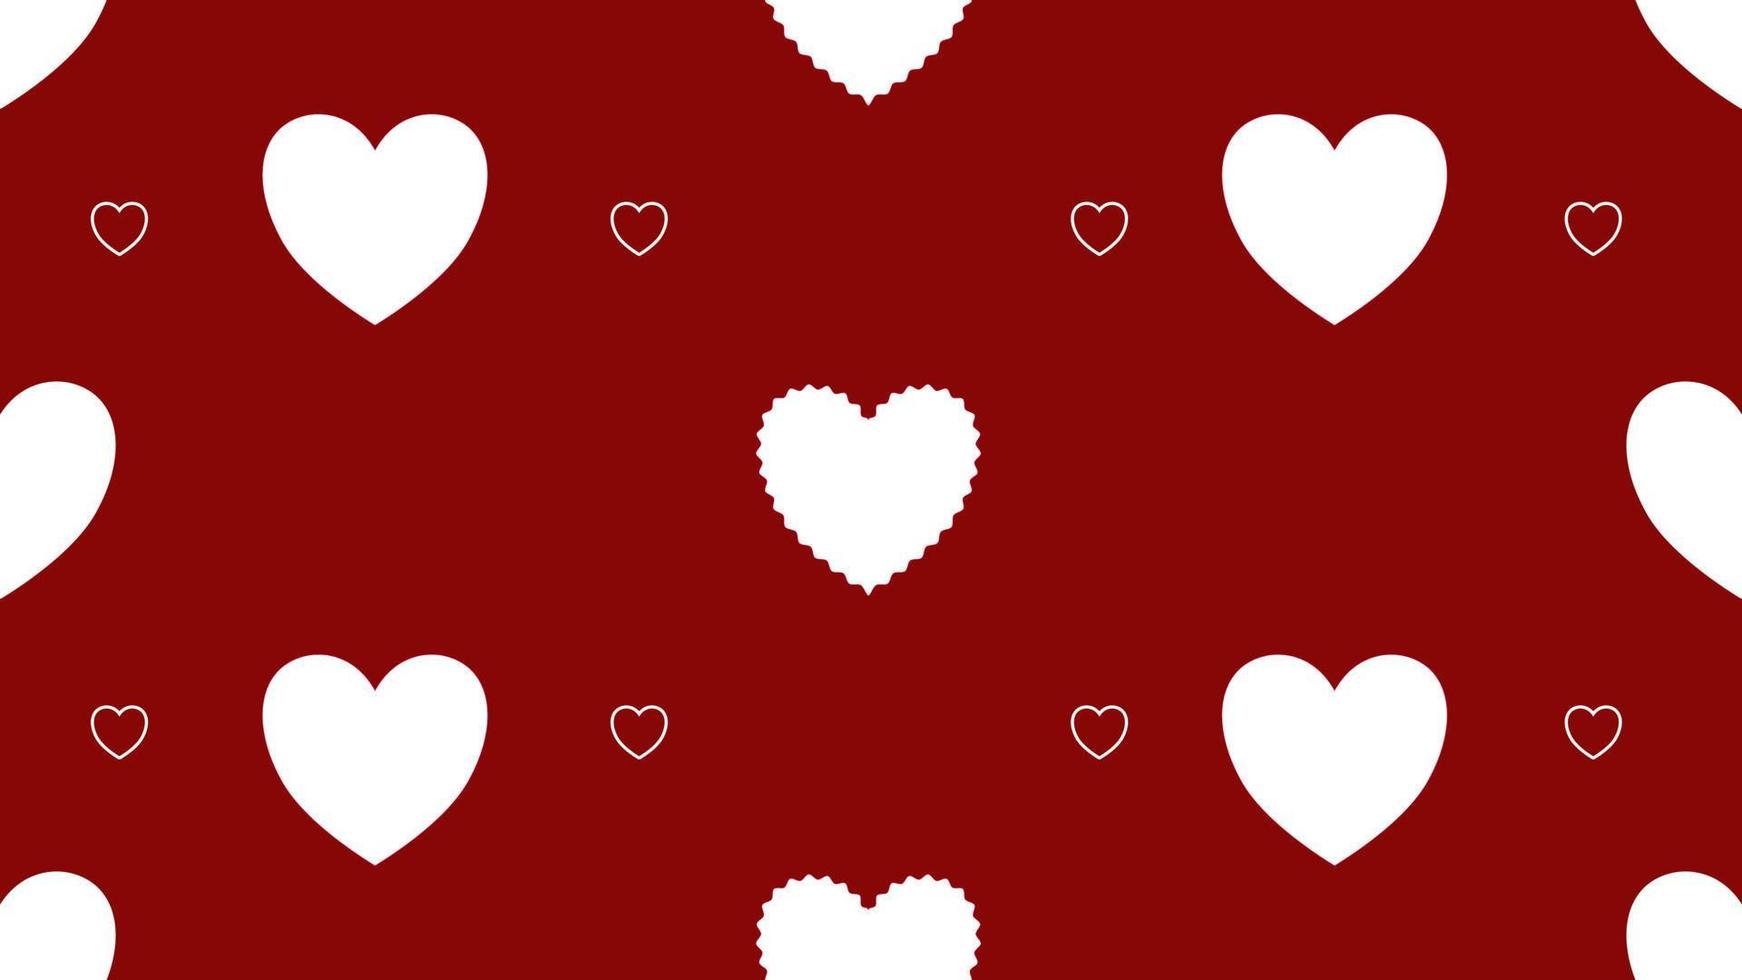 padrão perfeito de coração em fundo vermelho, perfeito para pano de fundo, papel de parede, cartão postal e plano de fundo vetor